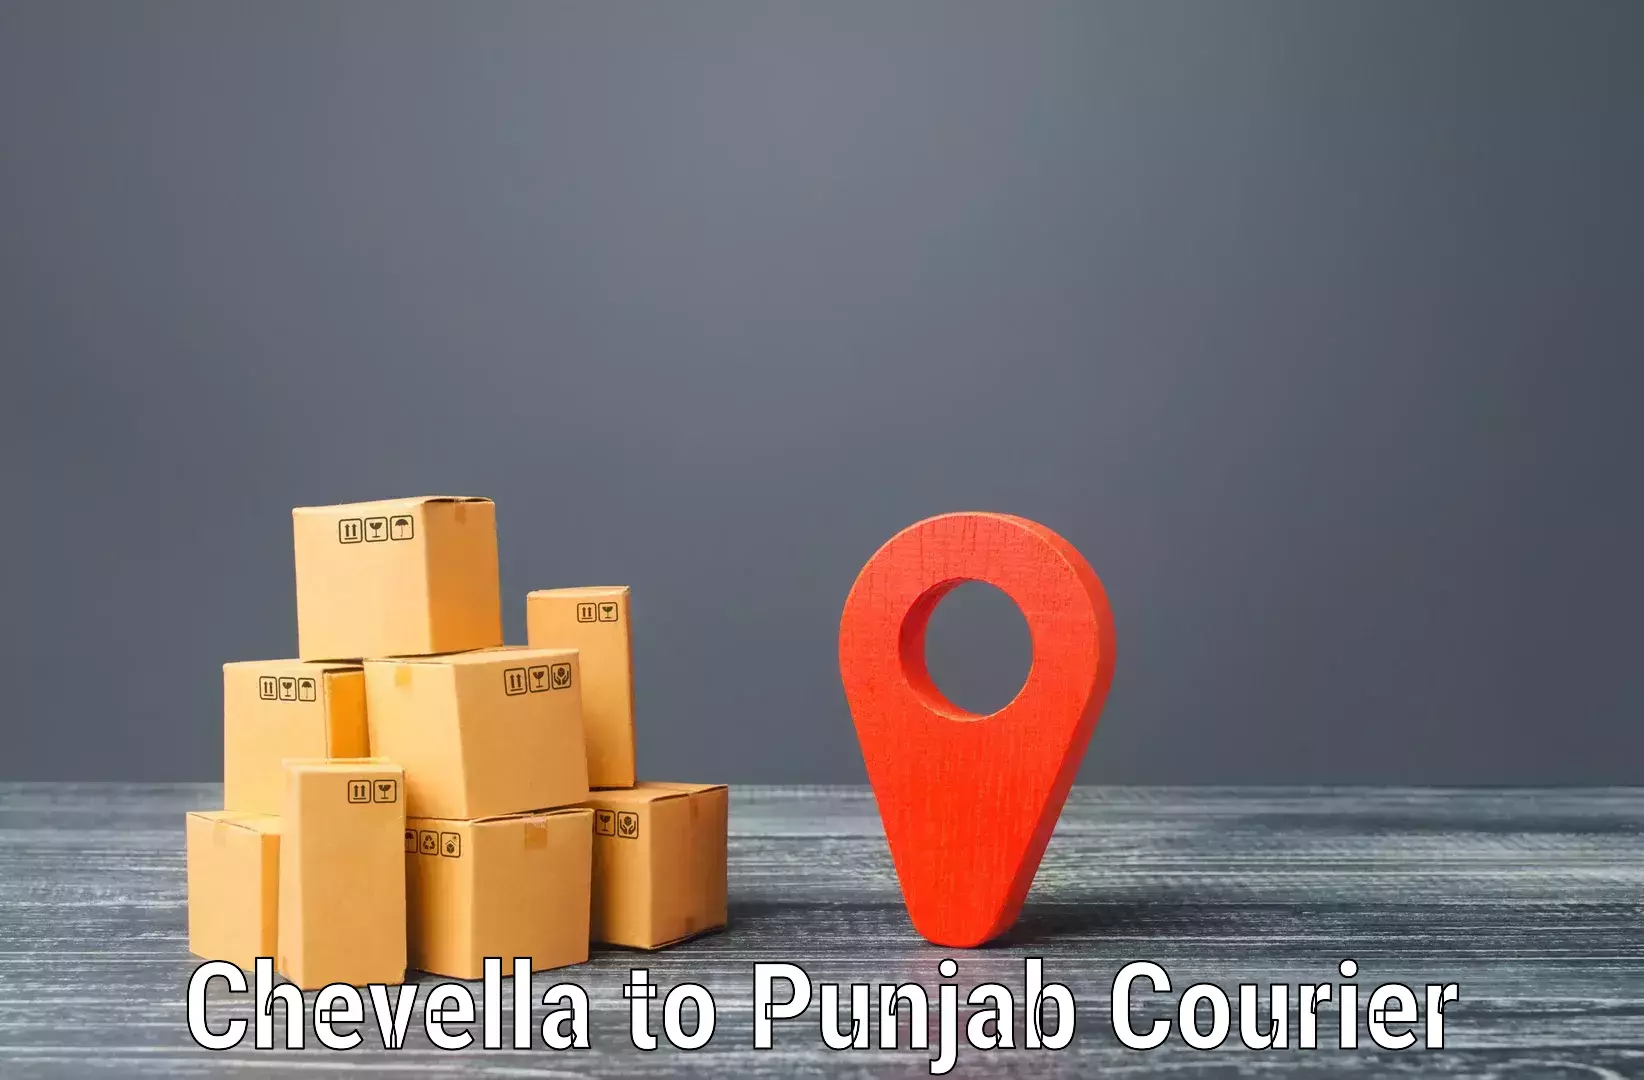 Smart shipping technology Chevella to Punjab